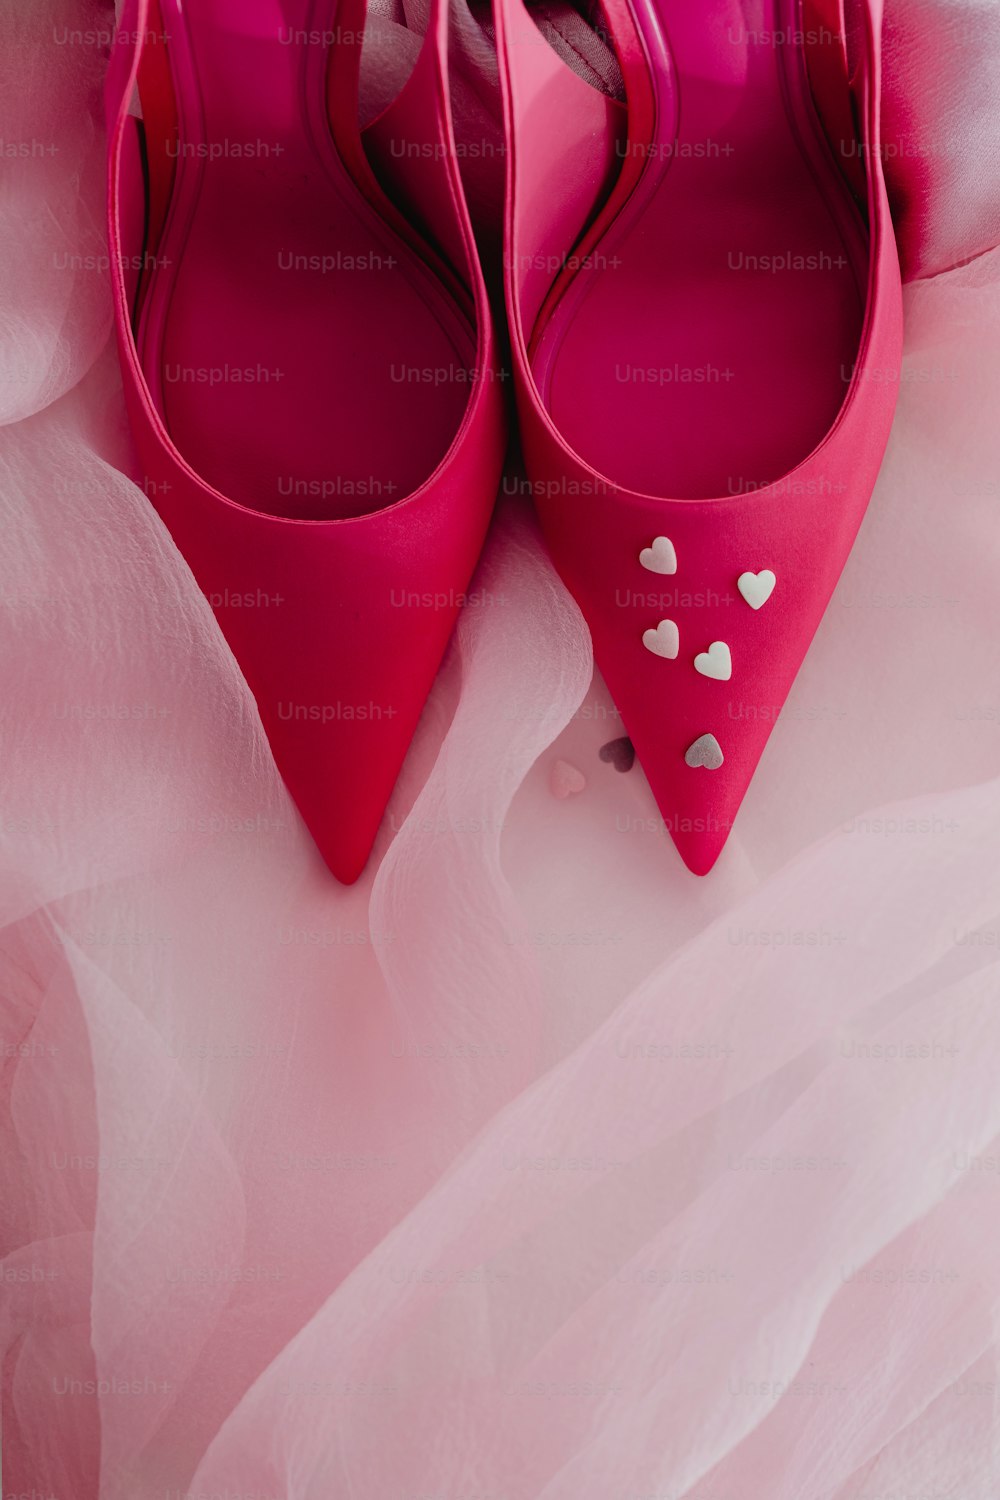 ein Paar rosa Schuhe mit Herzen darauf